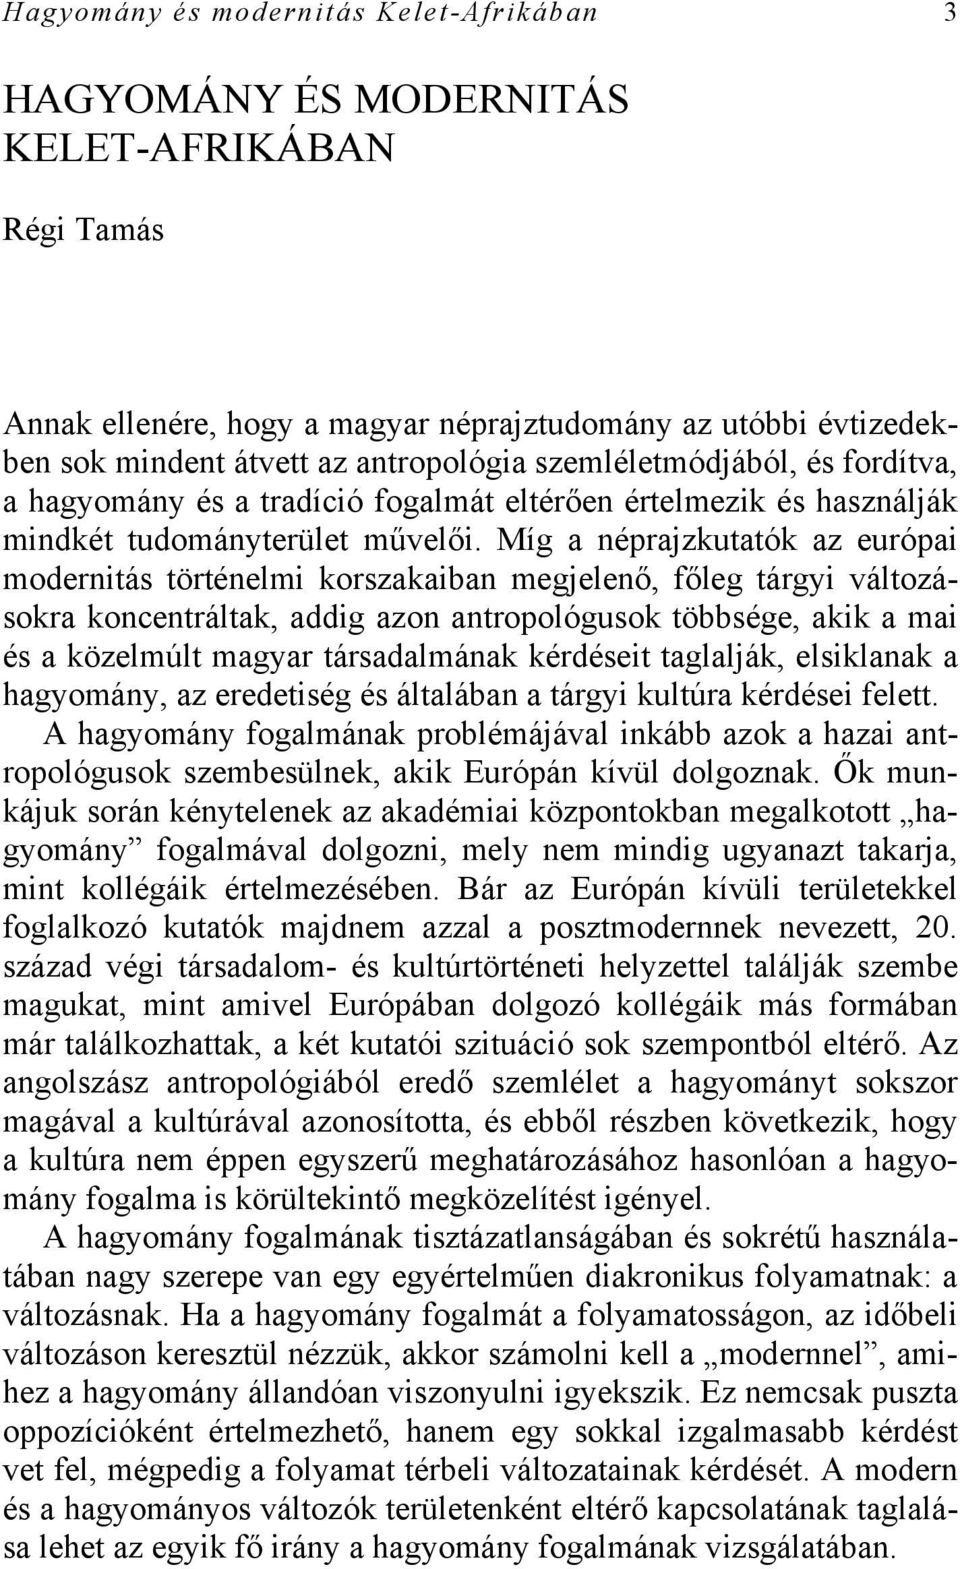 Míg a néprajzkutatók az európai modernitás történelmi korszakaiban megjelenő, főleg tárgyi változásokra koncentráltak, addig azon antropológusok többsége, akik a mai és a közelmúlt magyar